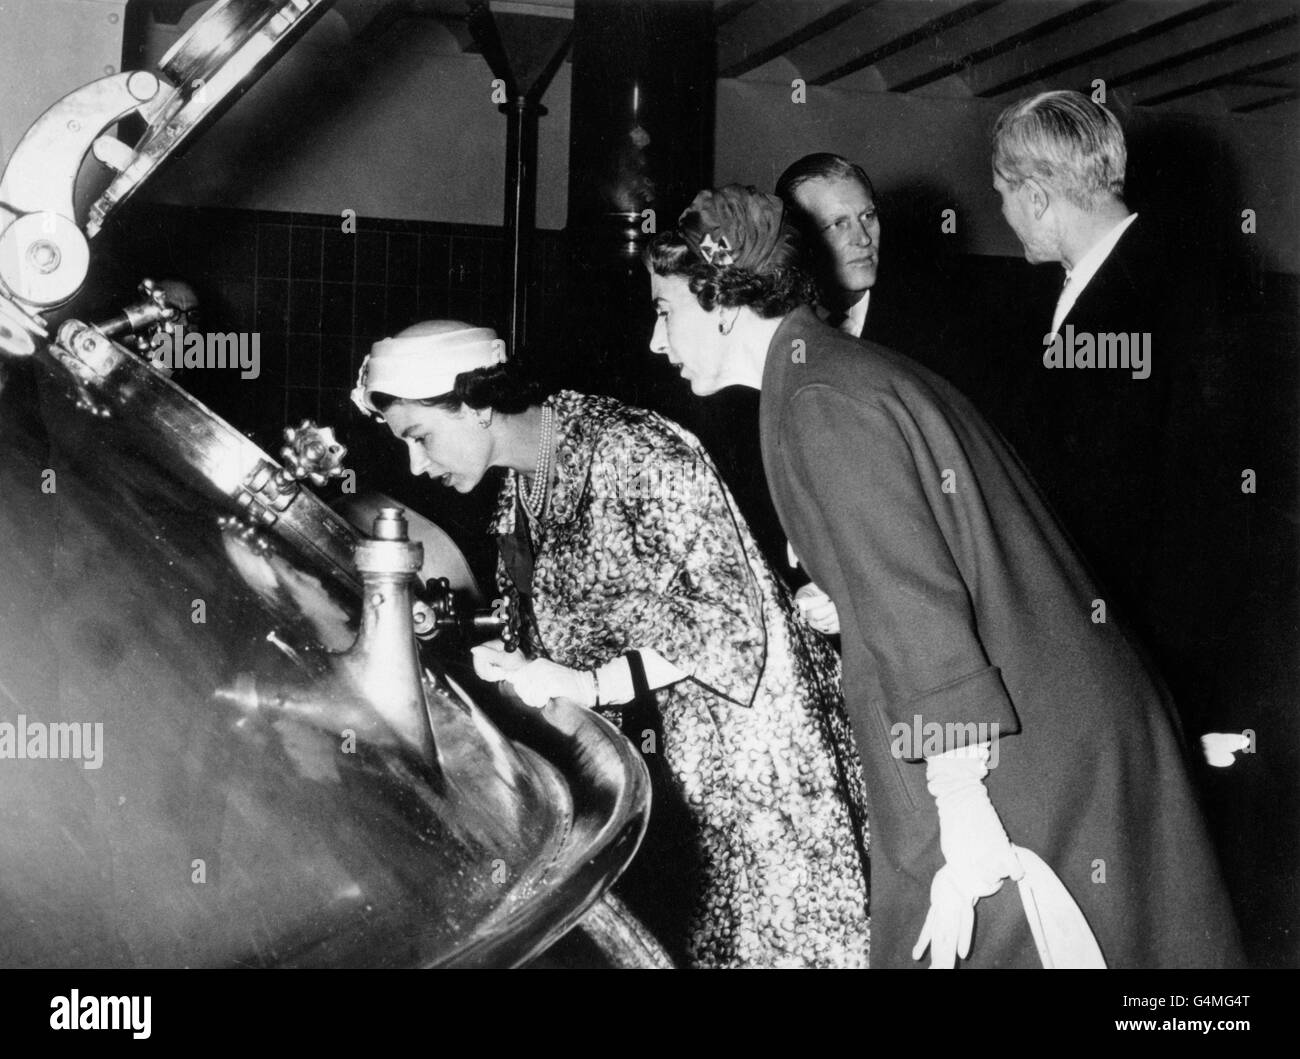 Due regine - Elisabetta II di Gran Bretagna e Ingrid di Danimarca, a destra, si trovano in uno dei vat enormi alla fabbrica di birra Carlsberg a Copenhagen. Foto Stock